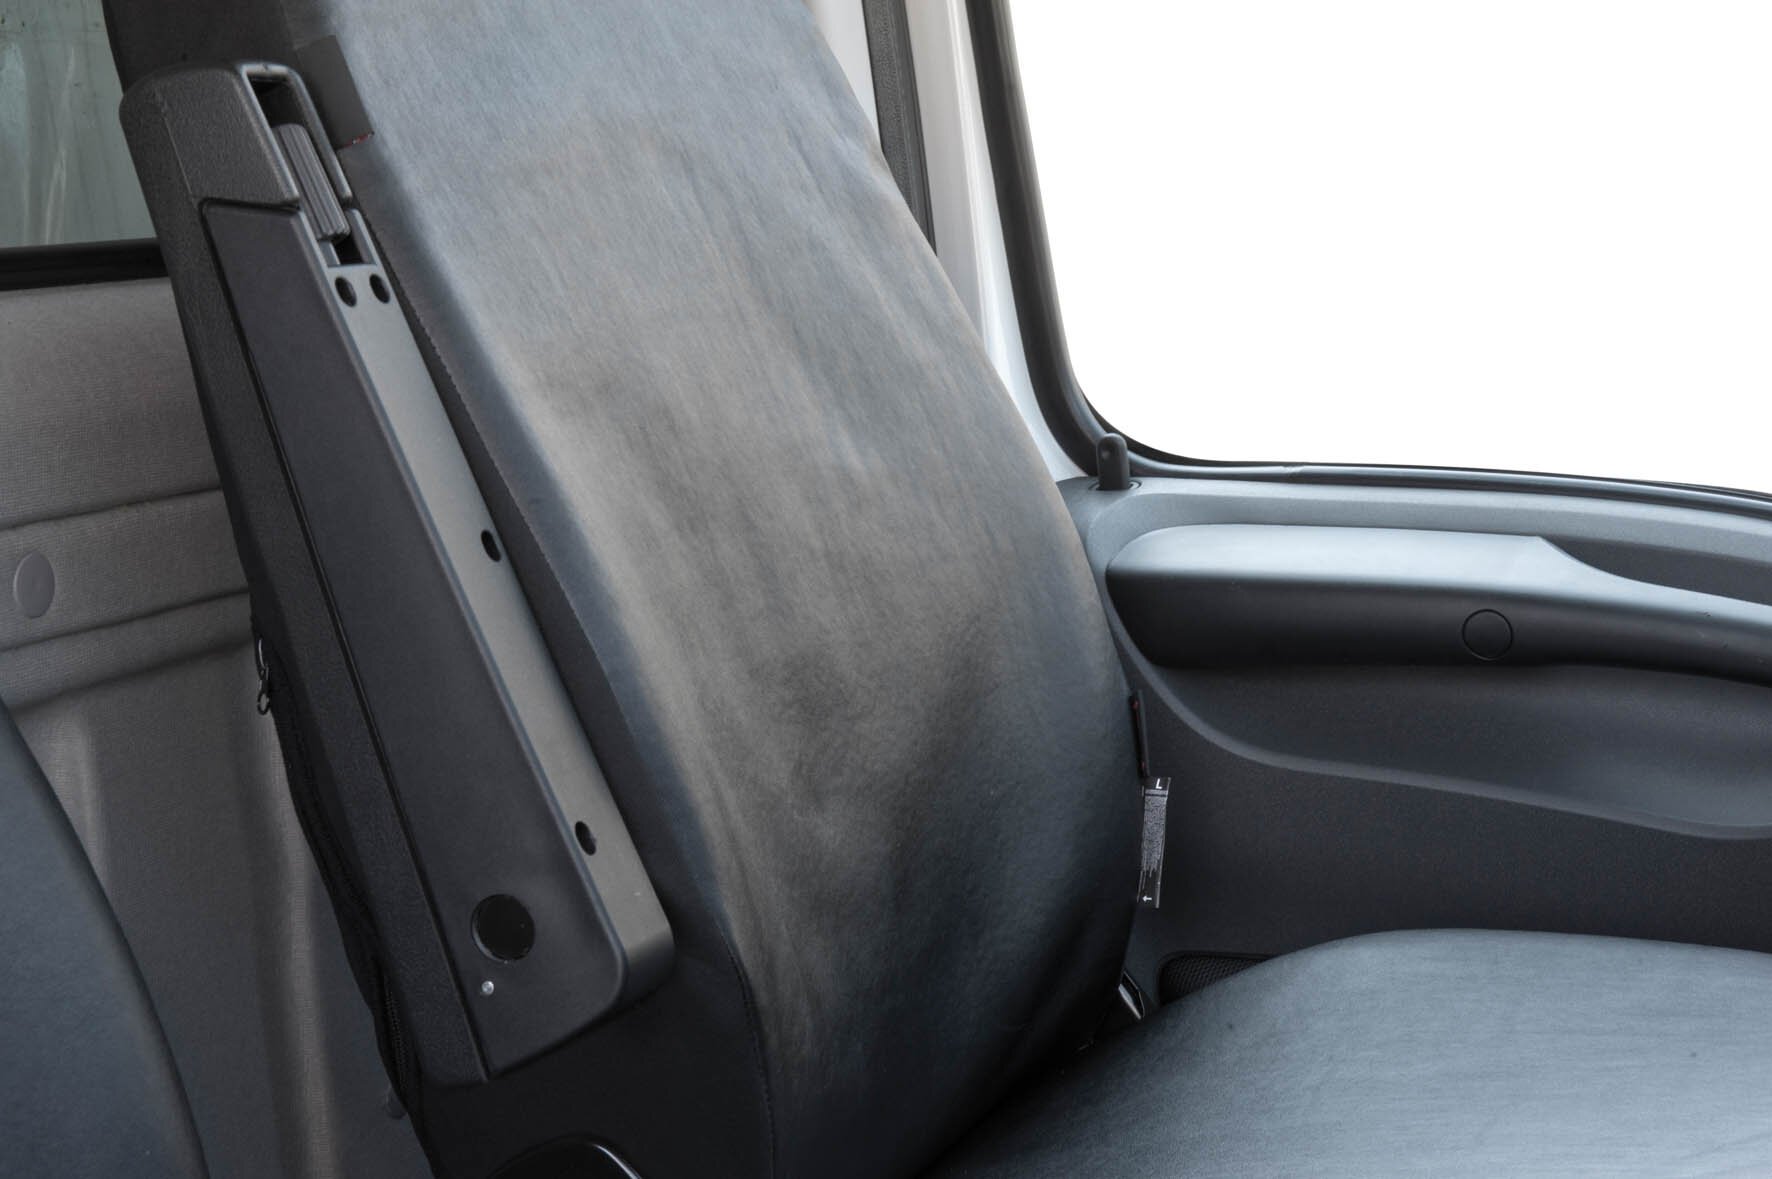 Housse de siège Transporter en simili cuir pour Iveco Daily IV, siège simple et double